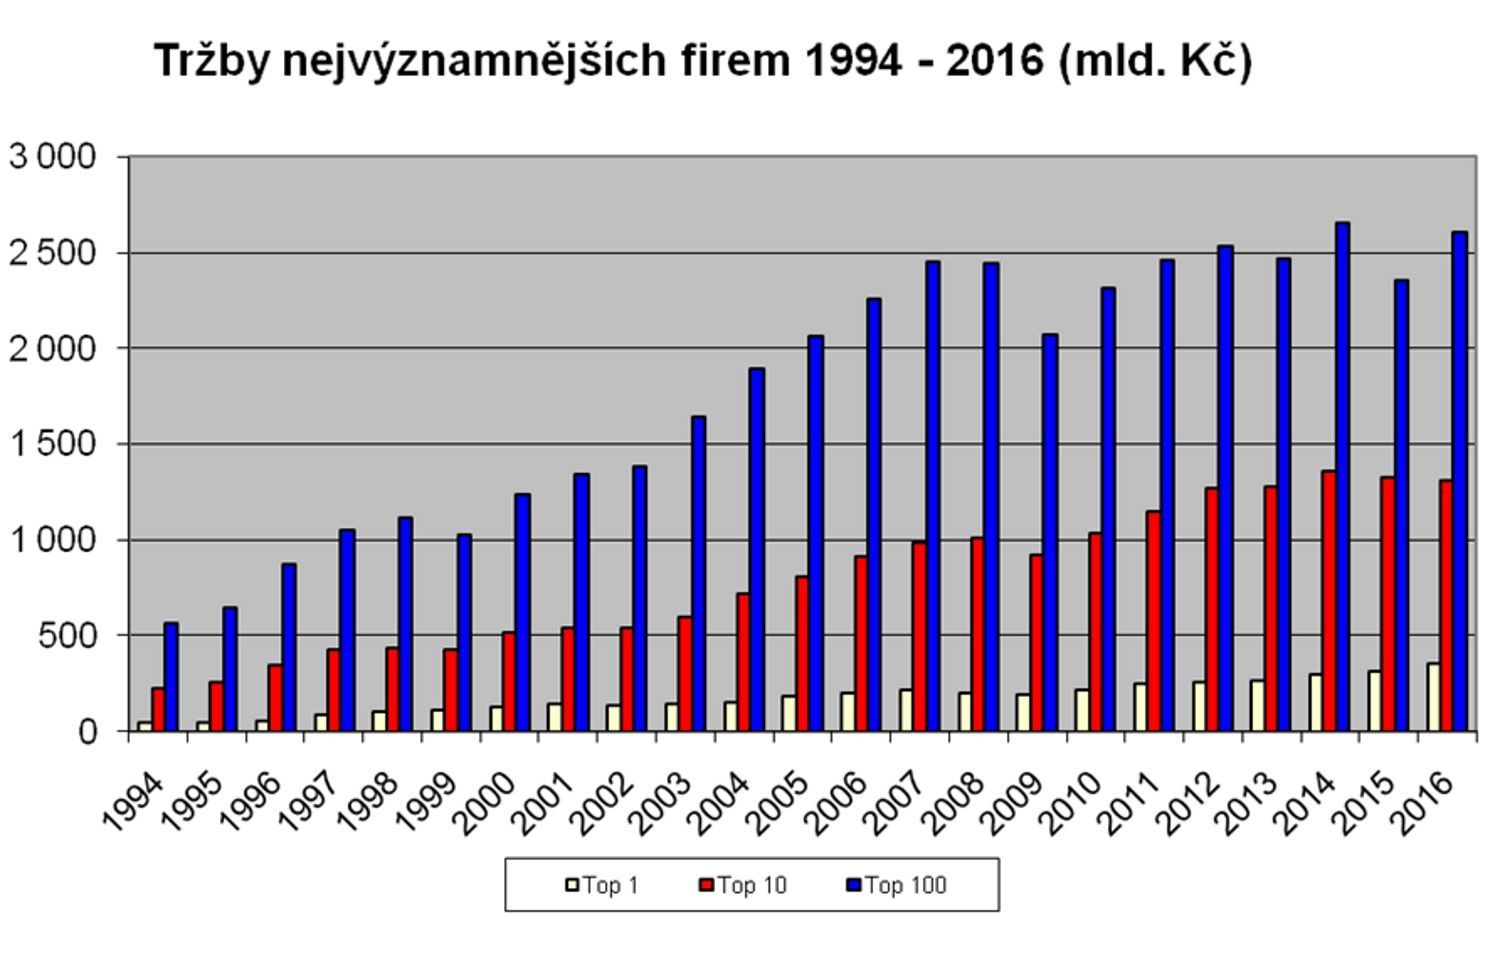 Czech TOP 100 Vývoj tržeb 1994 - 2016